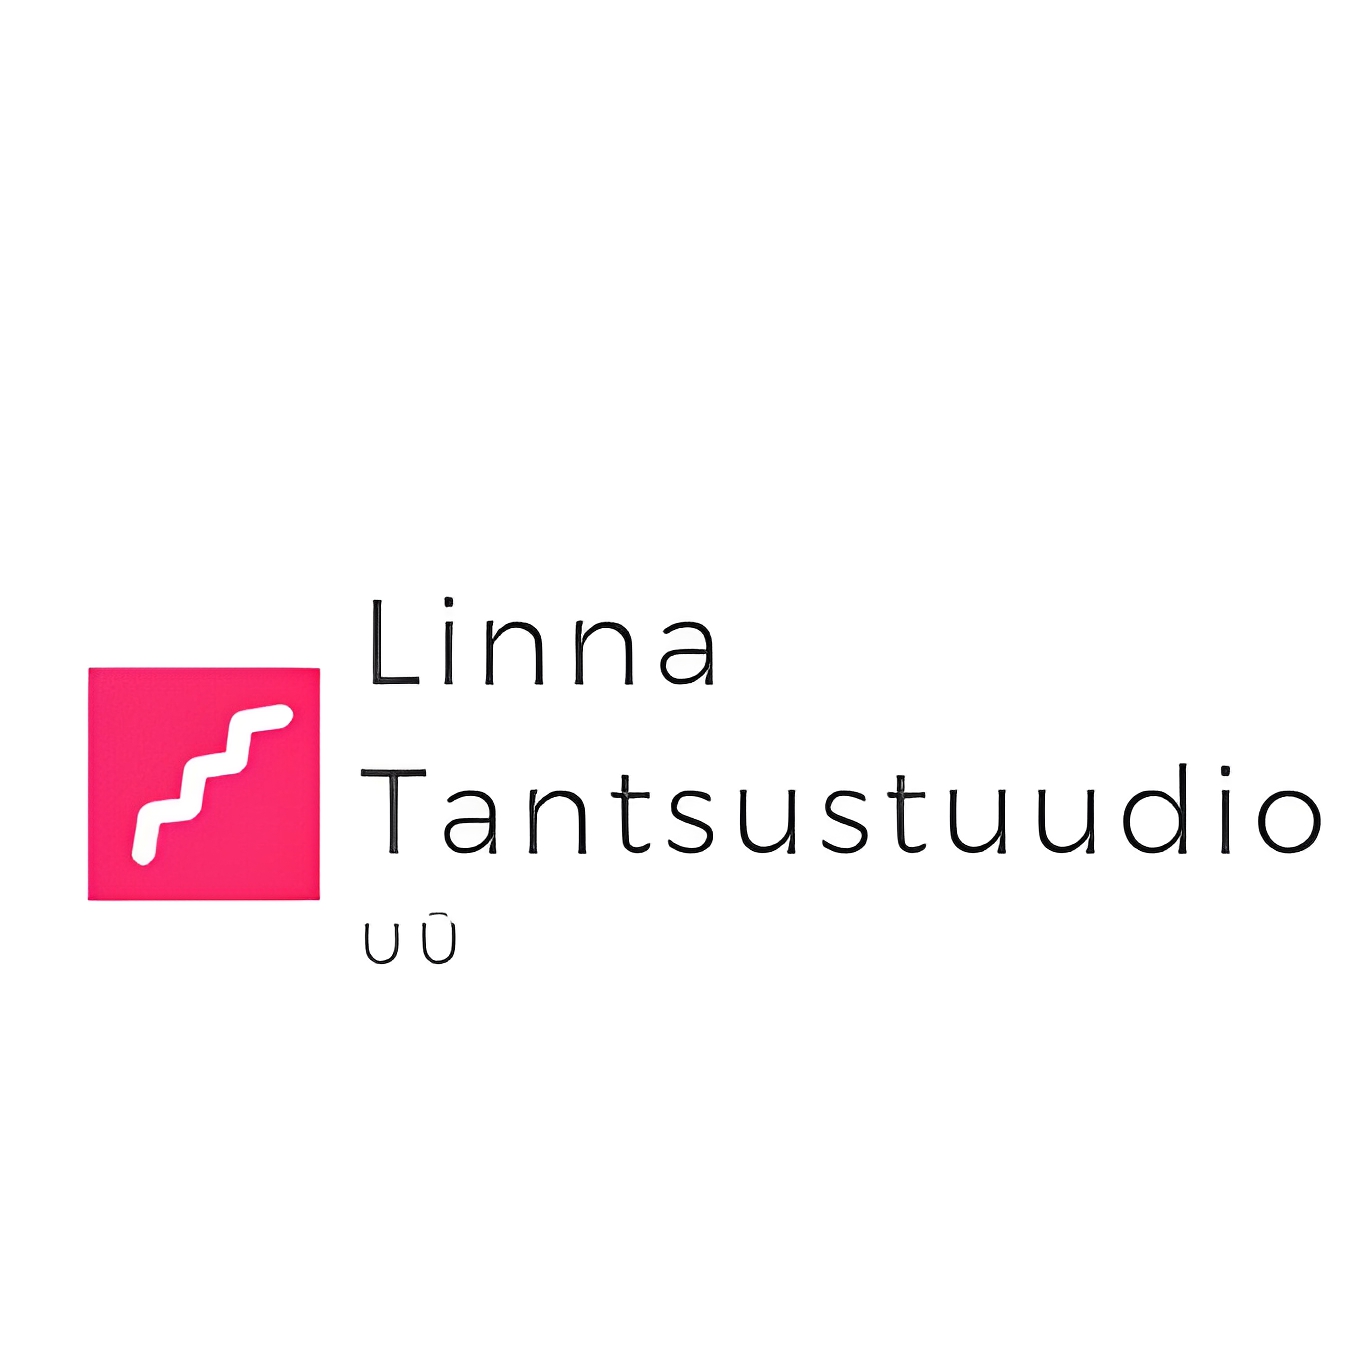 LINNA TANTSUSTUUDIO UÜ logo